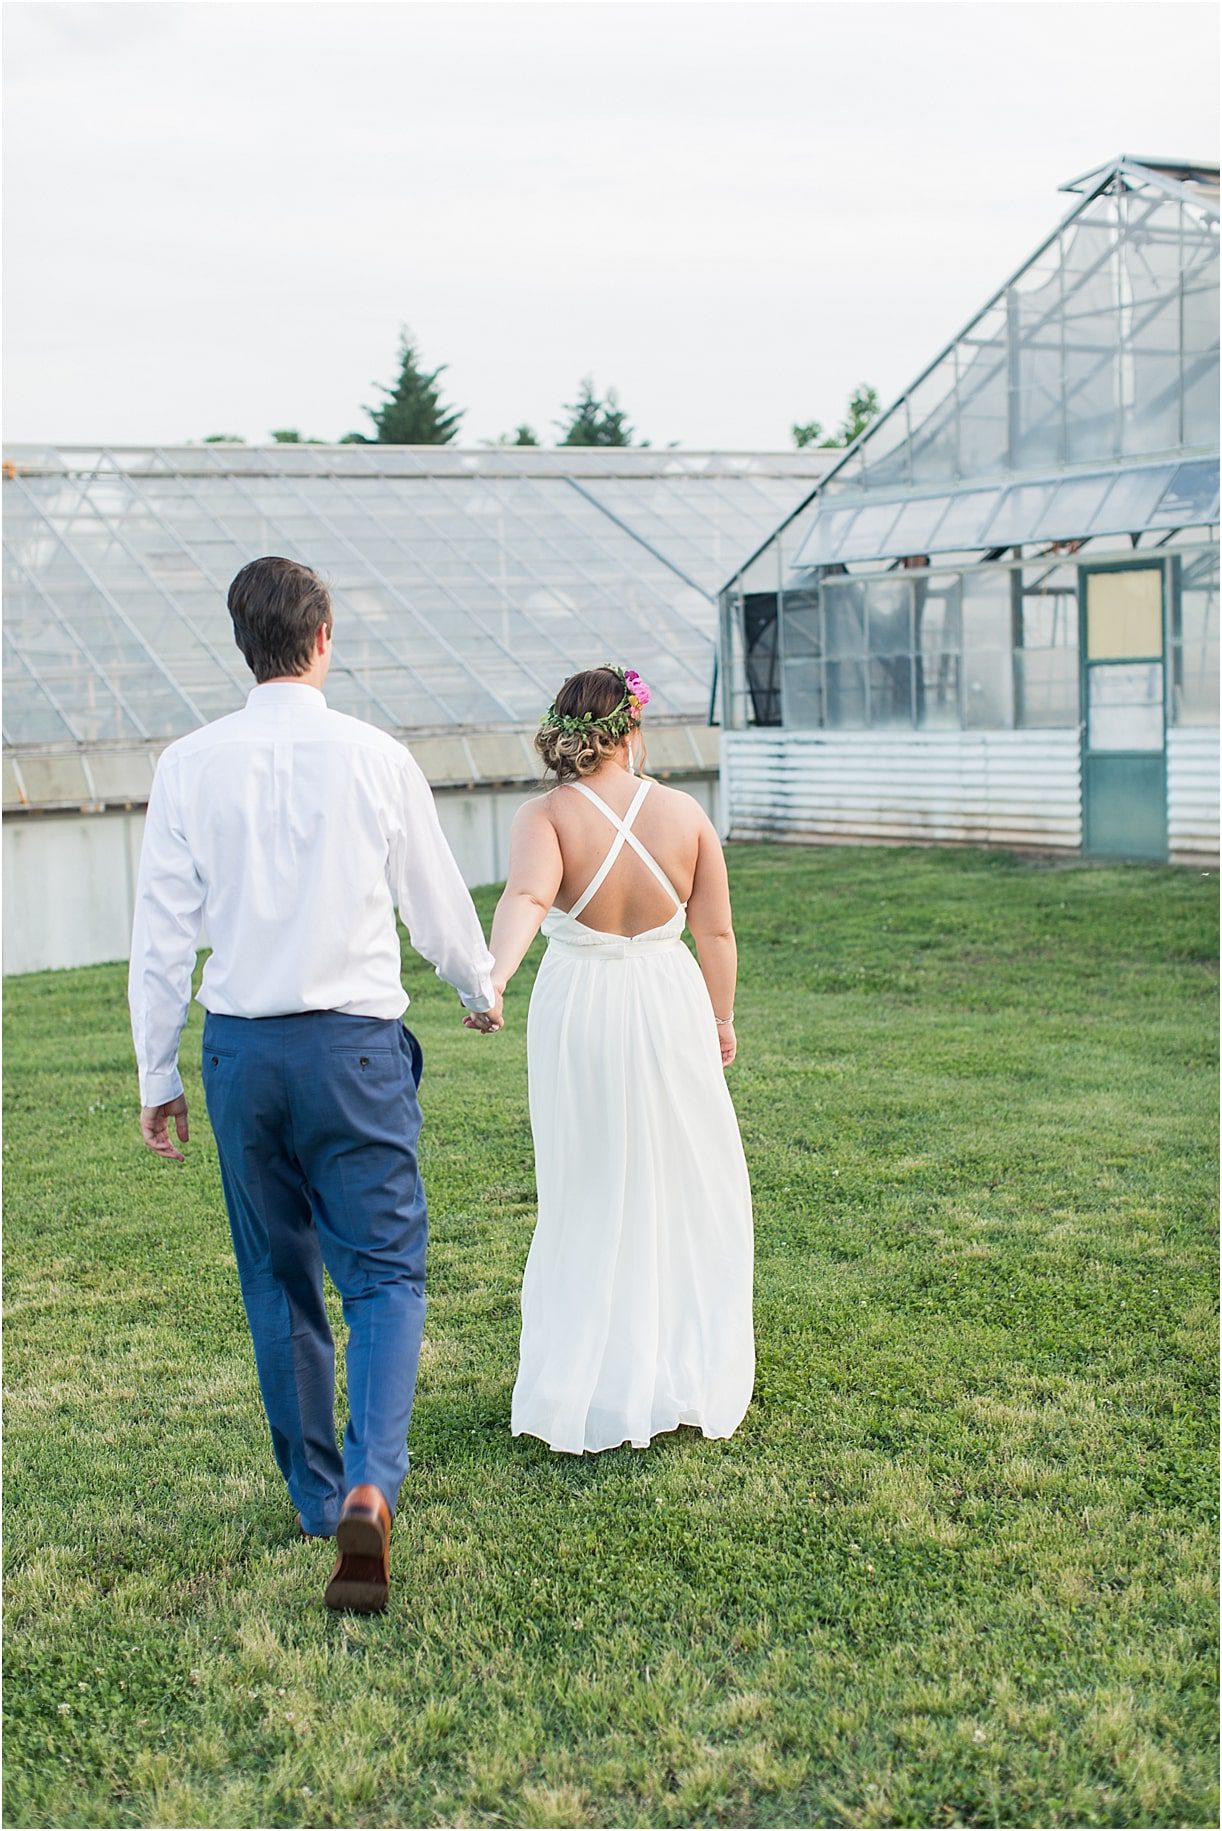 Urban Greenhouse Wedding DIY Farm | Hill City Bride Virginia Wedding Blog